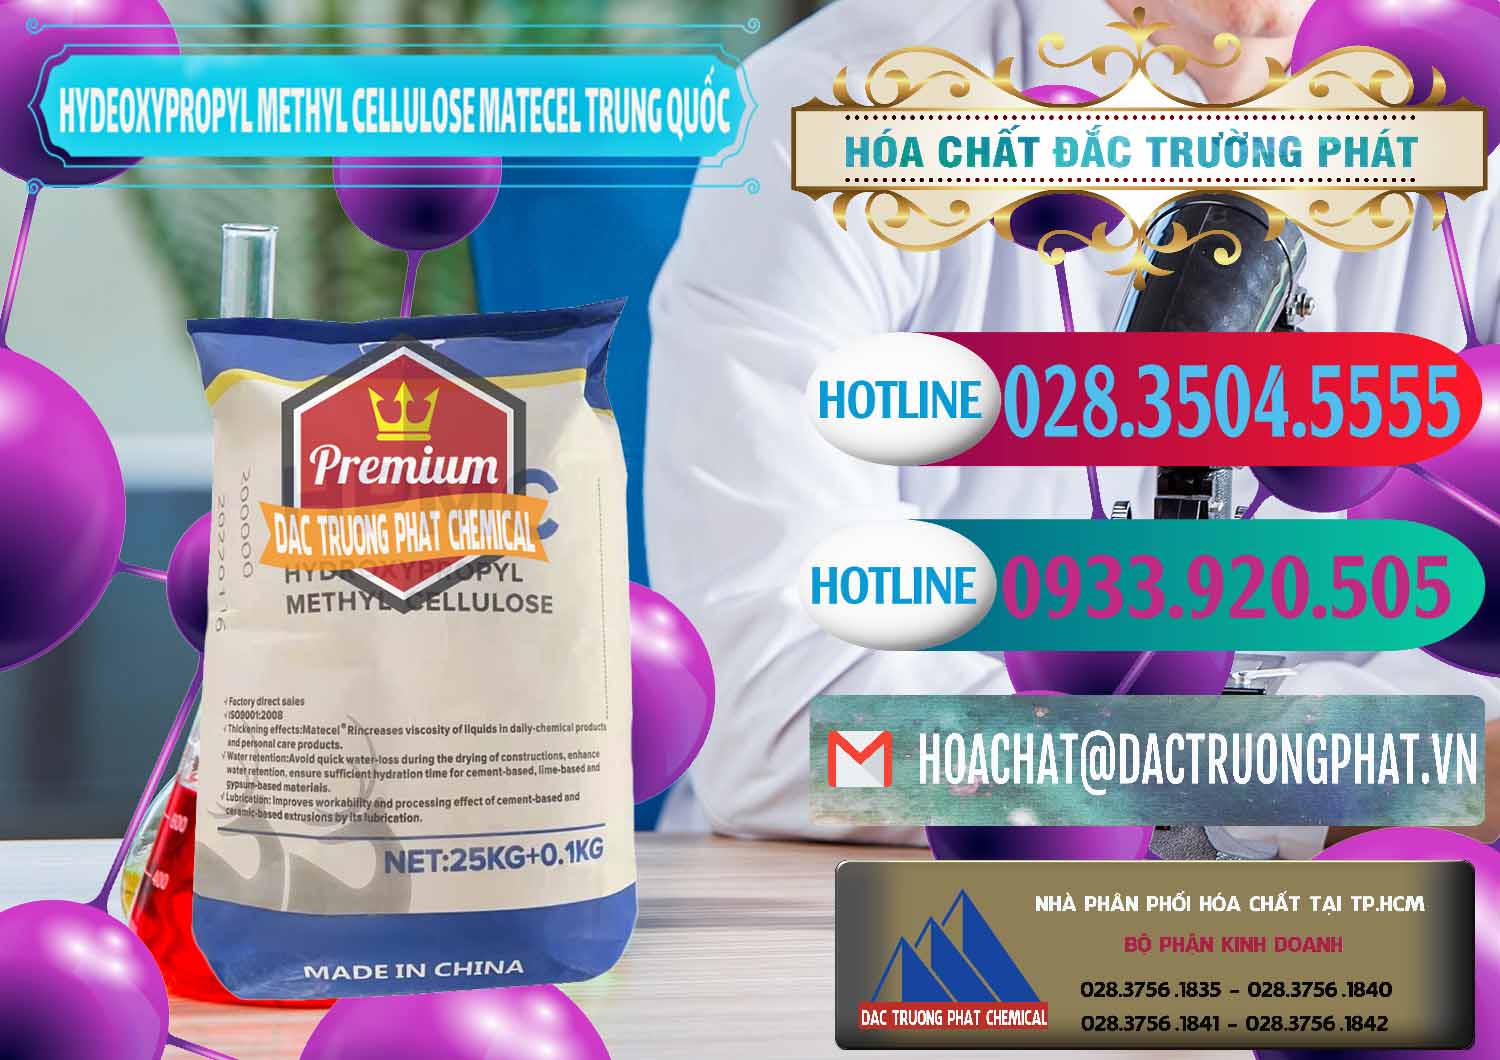 Chuyên cung ứng ( bán ) Chất Tạo Đặc HPMC - Hydroxypropyl Methyl Cellulose Matecel Trung Quốc China - 0396 - Chuyên nhập khẩu - cung cấp hóa chất tại TP.HCM - truongphat.vn